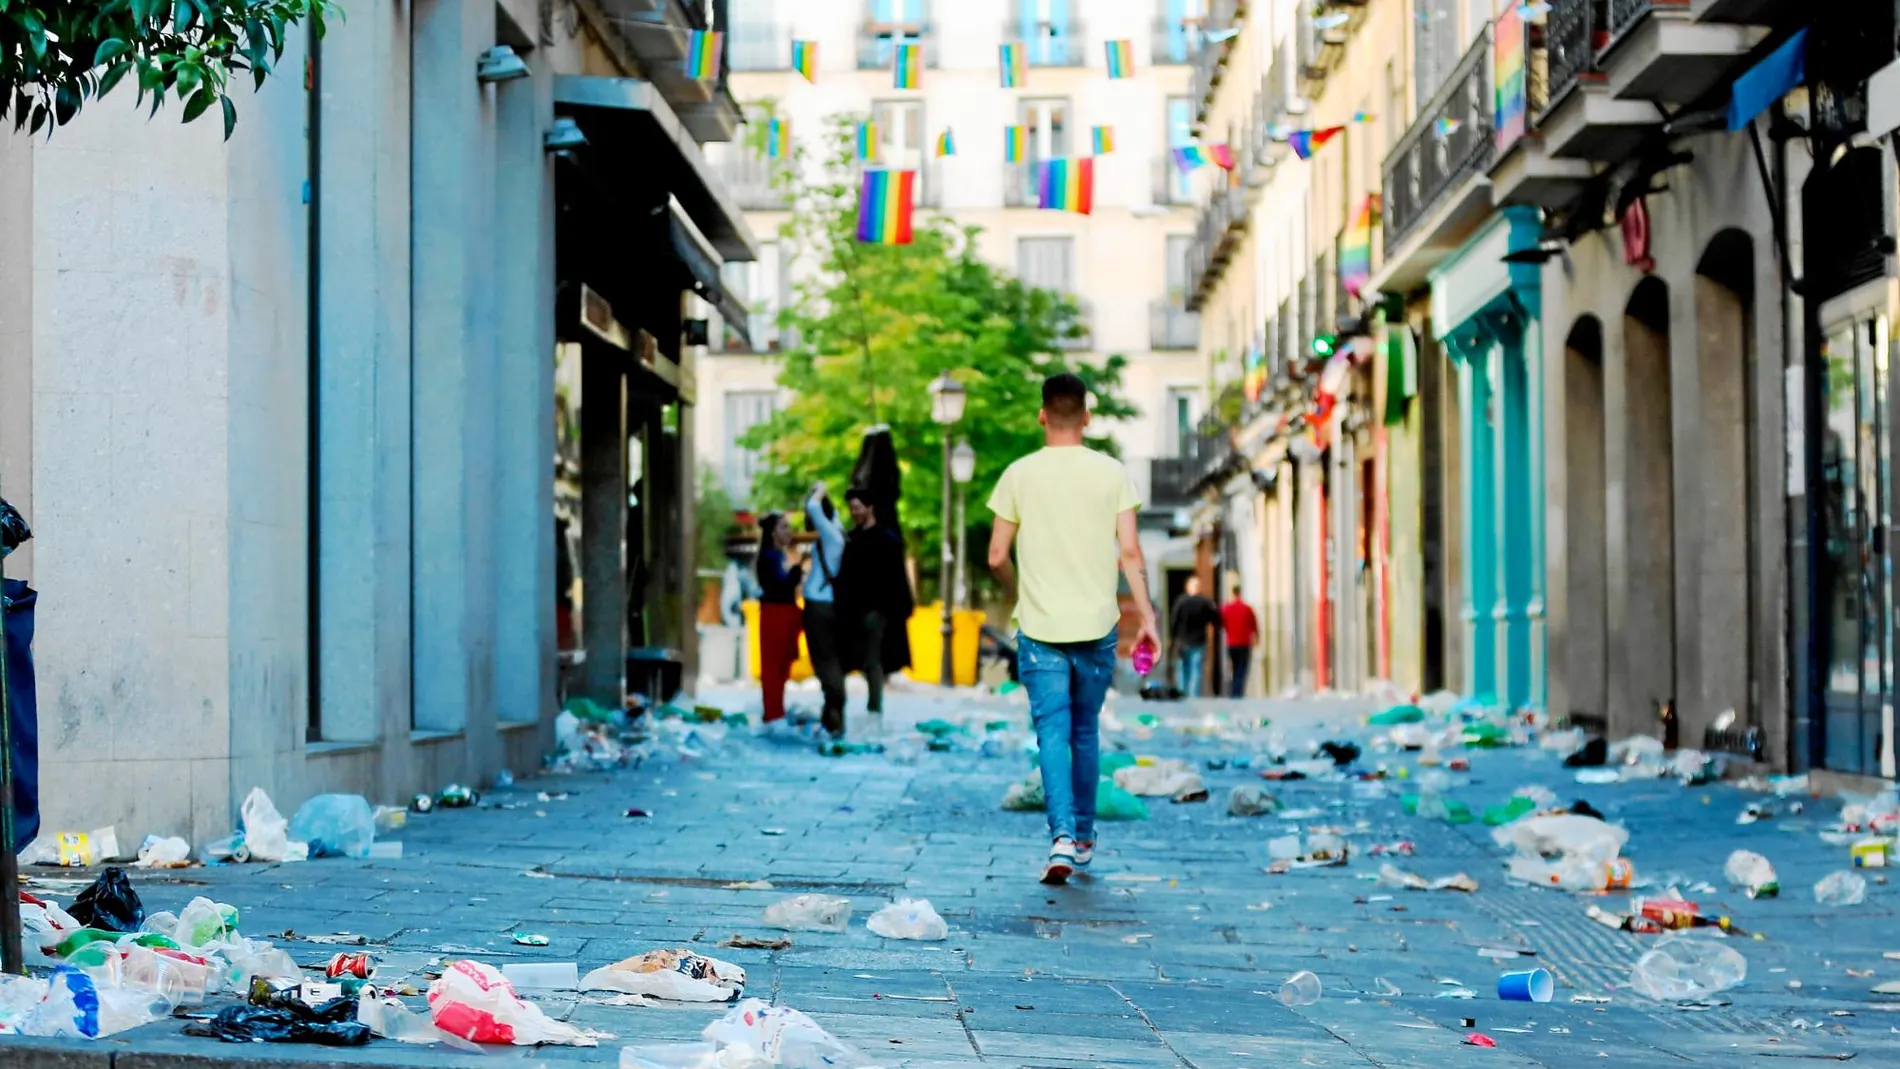 La suciedad que queda en las calles tras las fiestas es otro de los grandes motivos de queja por parte de los vecinos. Foto: Cristina Bejarano